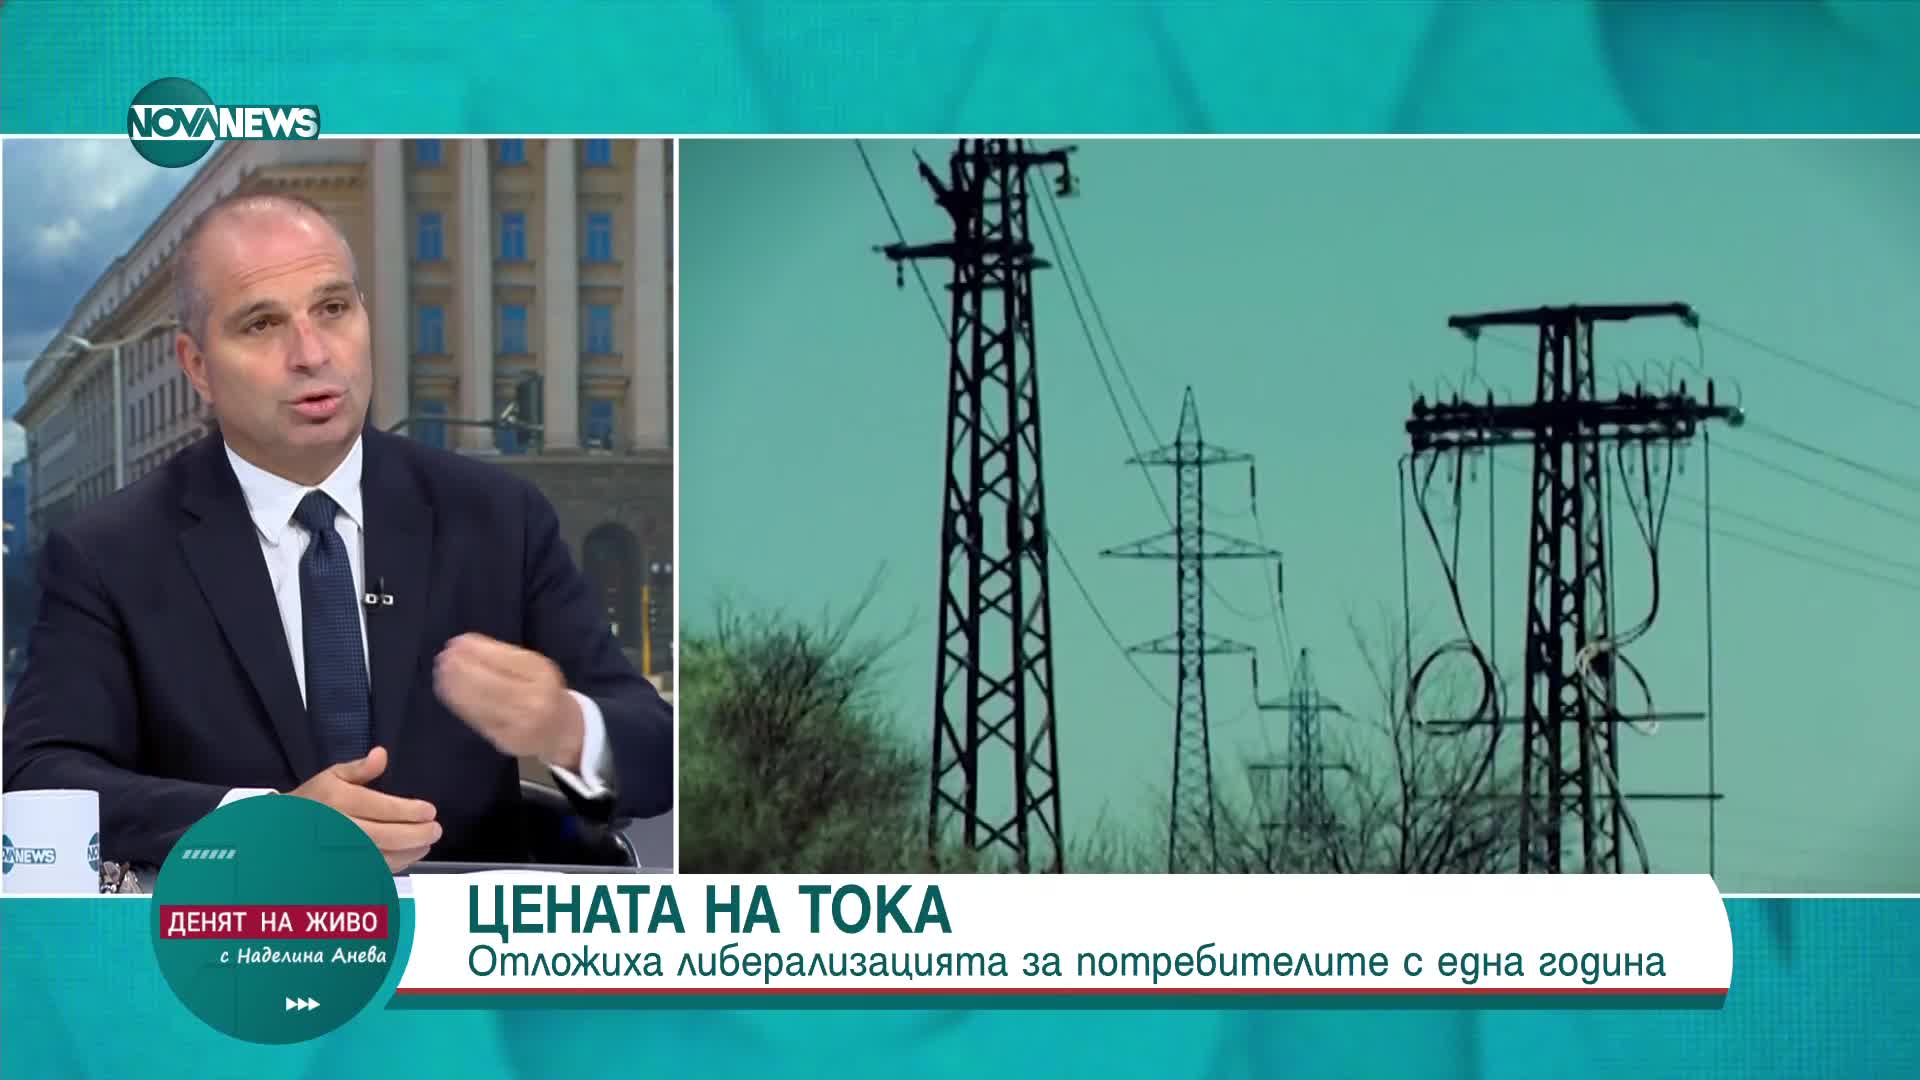 Гроздан Караджов: Не сме готови за либерализацията на пазара на ток